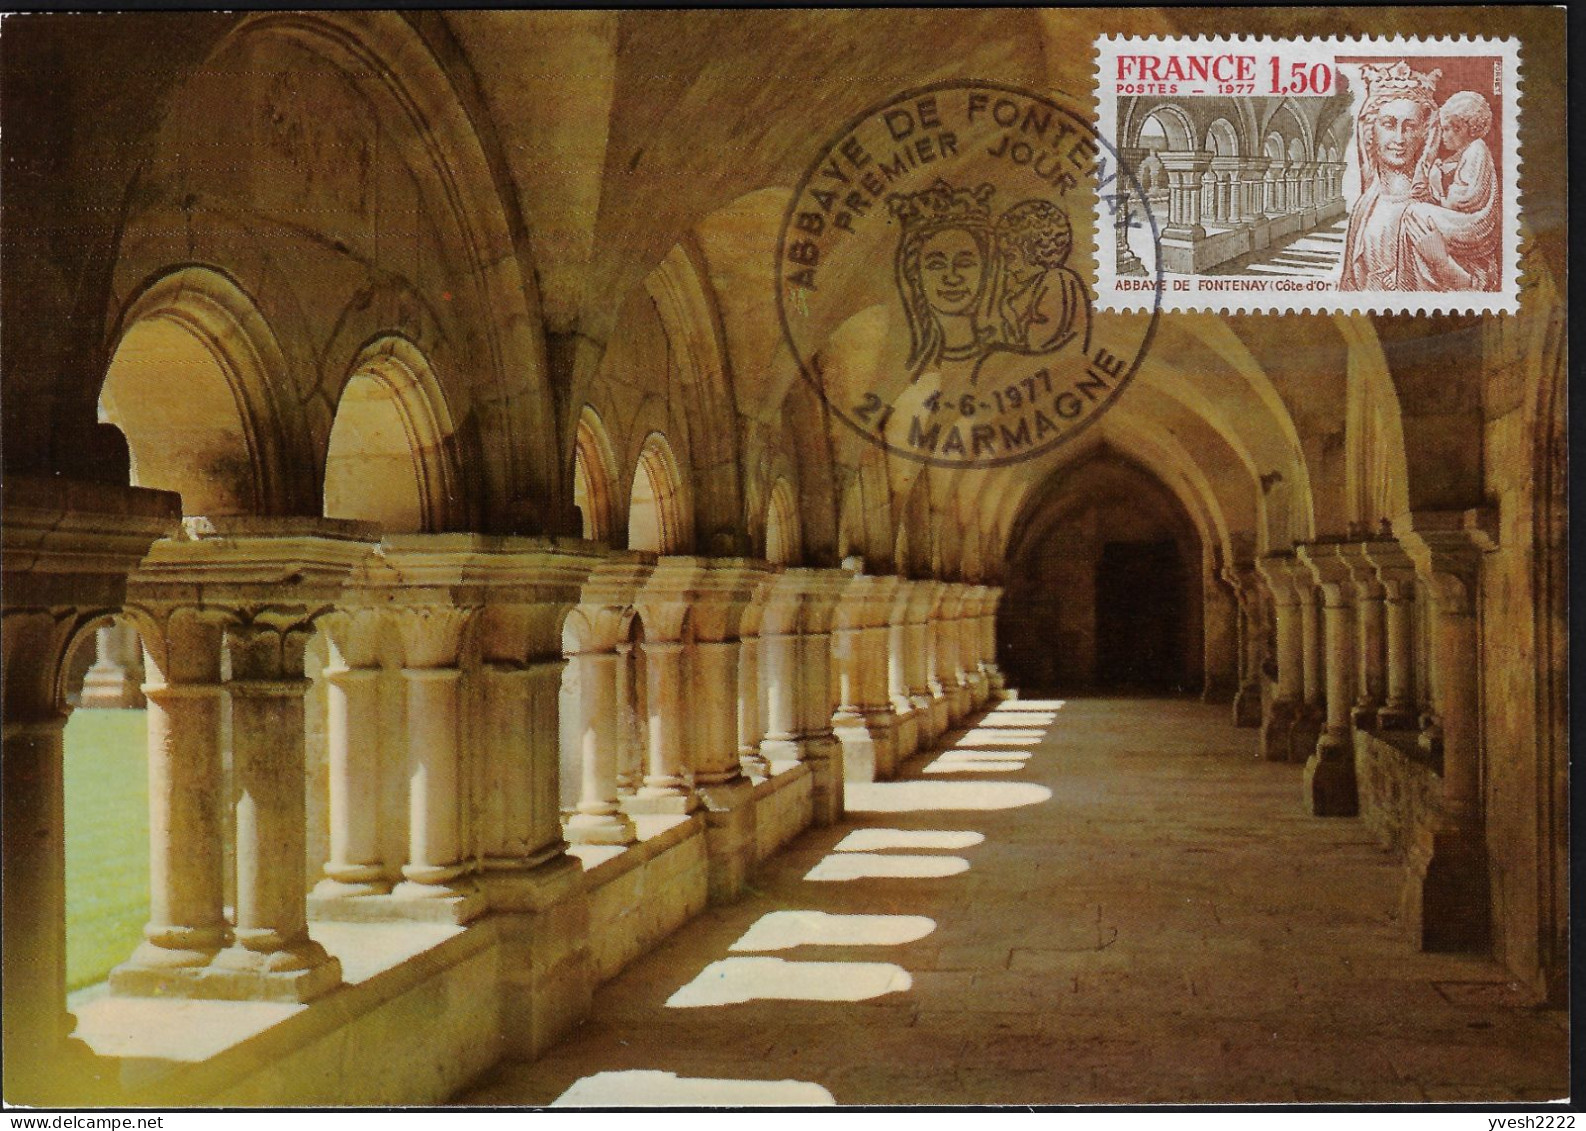 France 1977 Y&T 1938 Sur 2 Cartes Maxima. Abbaye Cistercienne De Fontenay. Cloître Et Statue De La Vierge. Marmagne - Abadías Y Monasterios